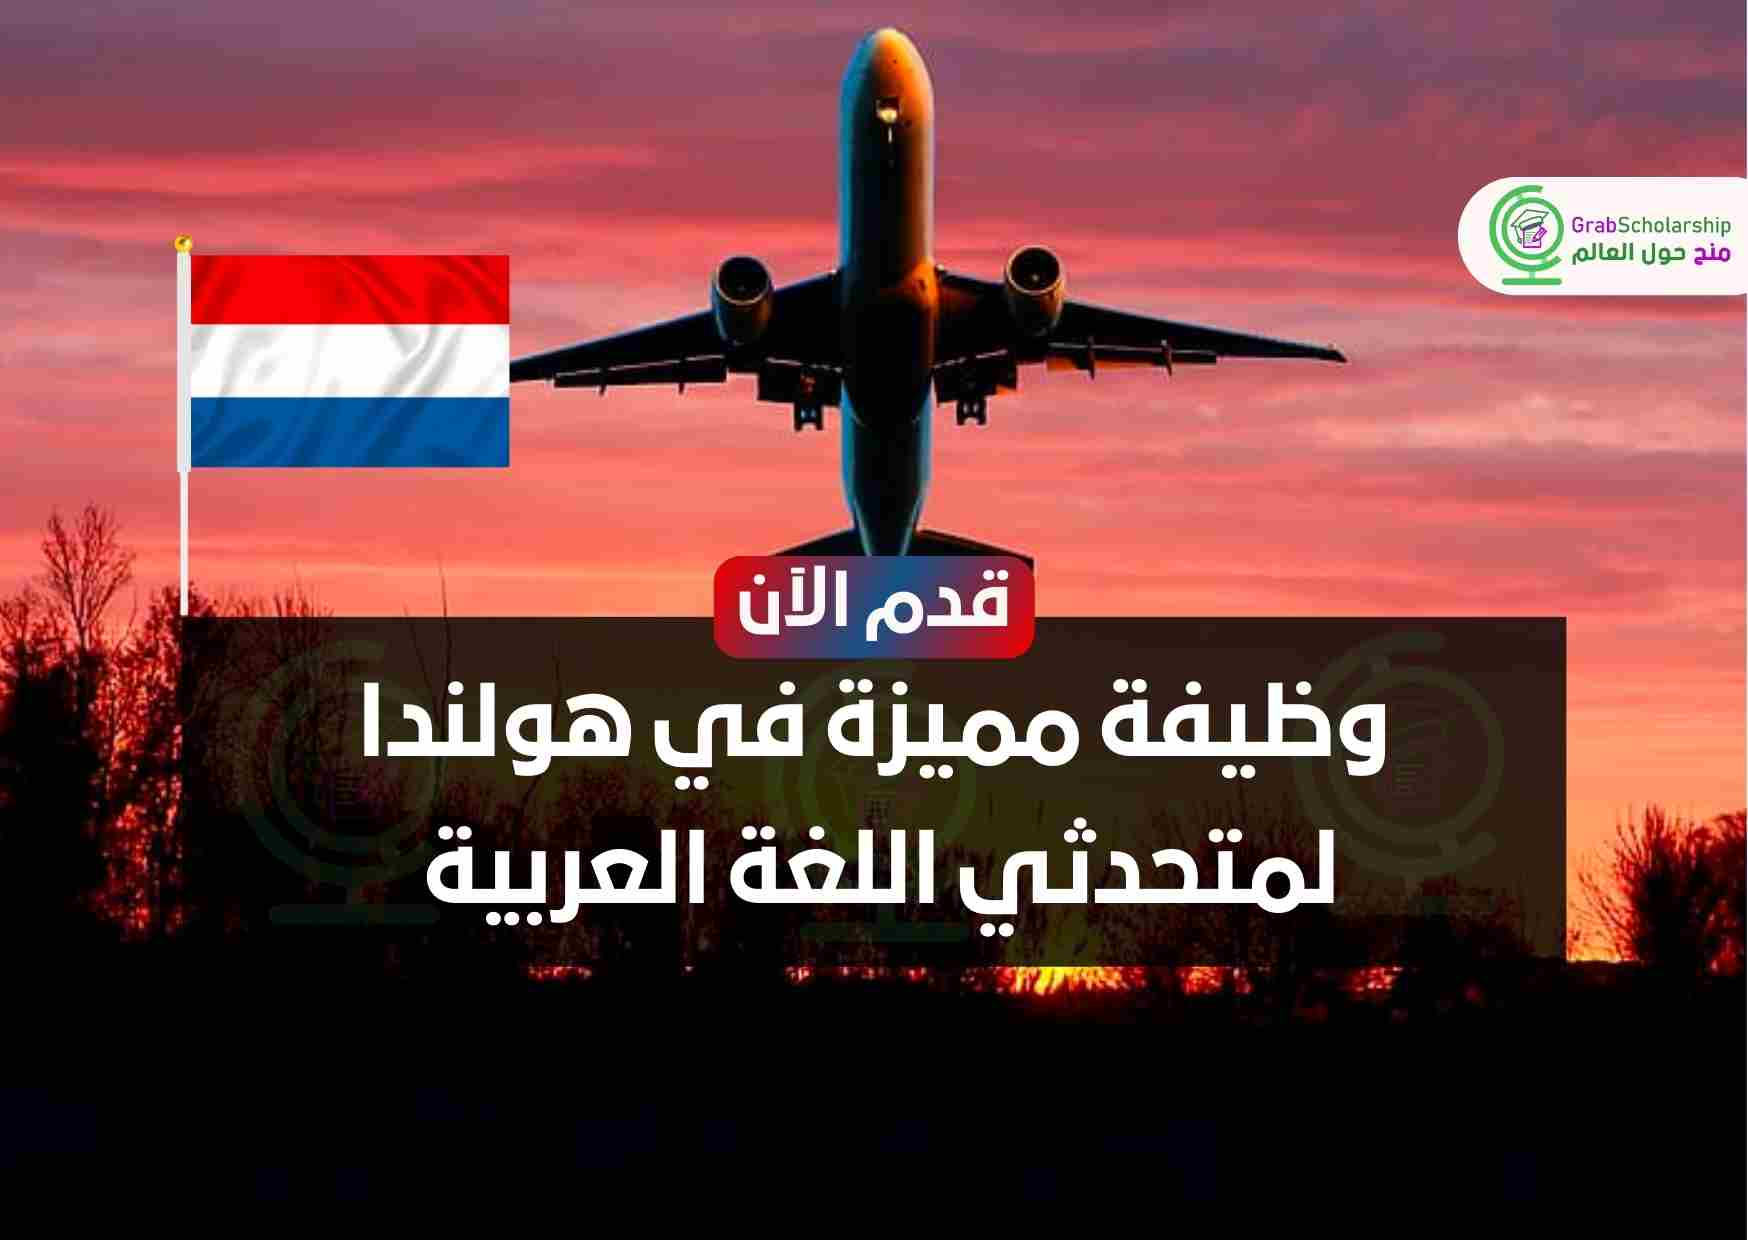 وظيفة مميزة في هولندا لمتحدثي اللغة العربية